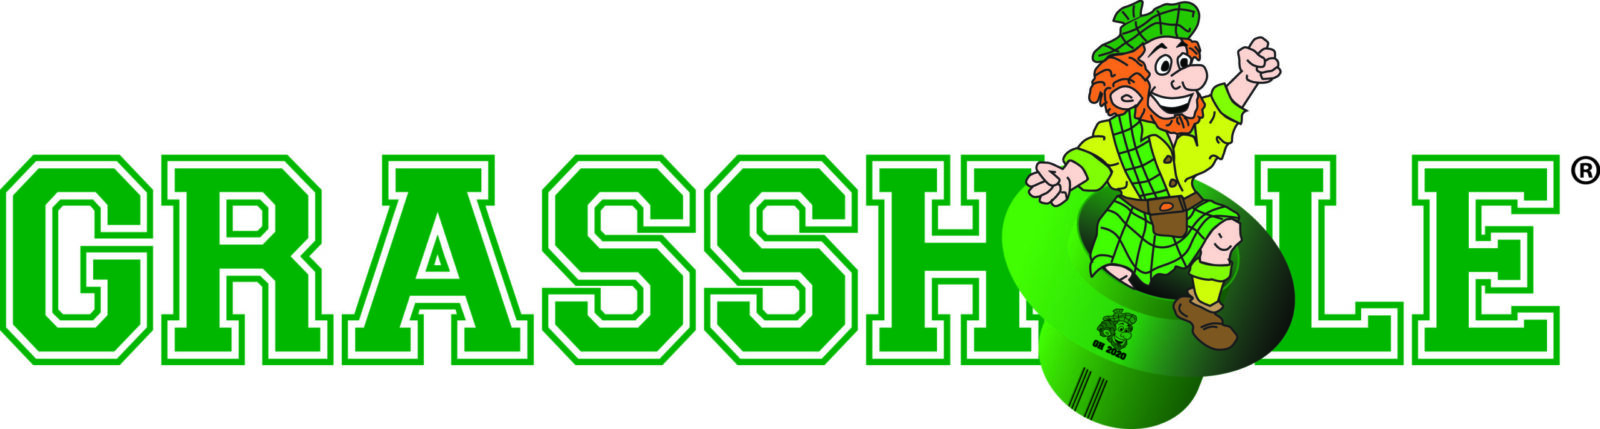 Grasshole Logo 2